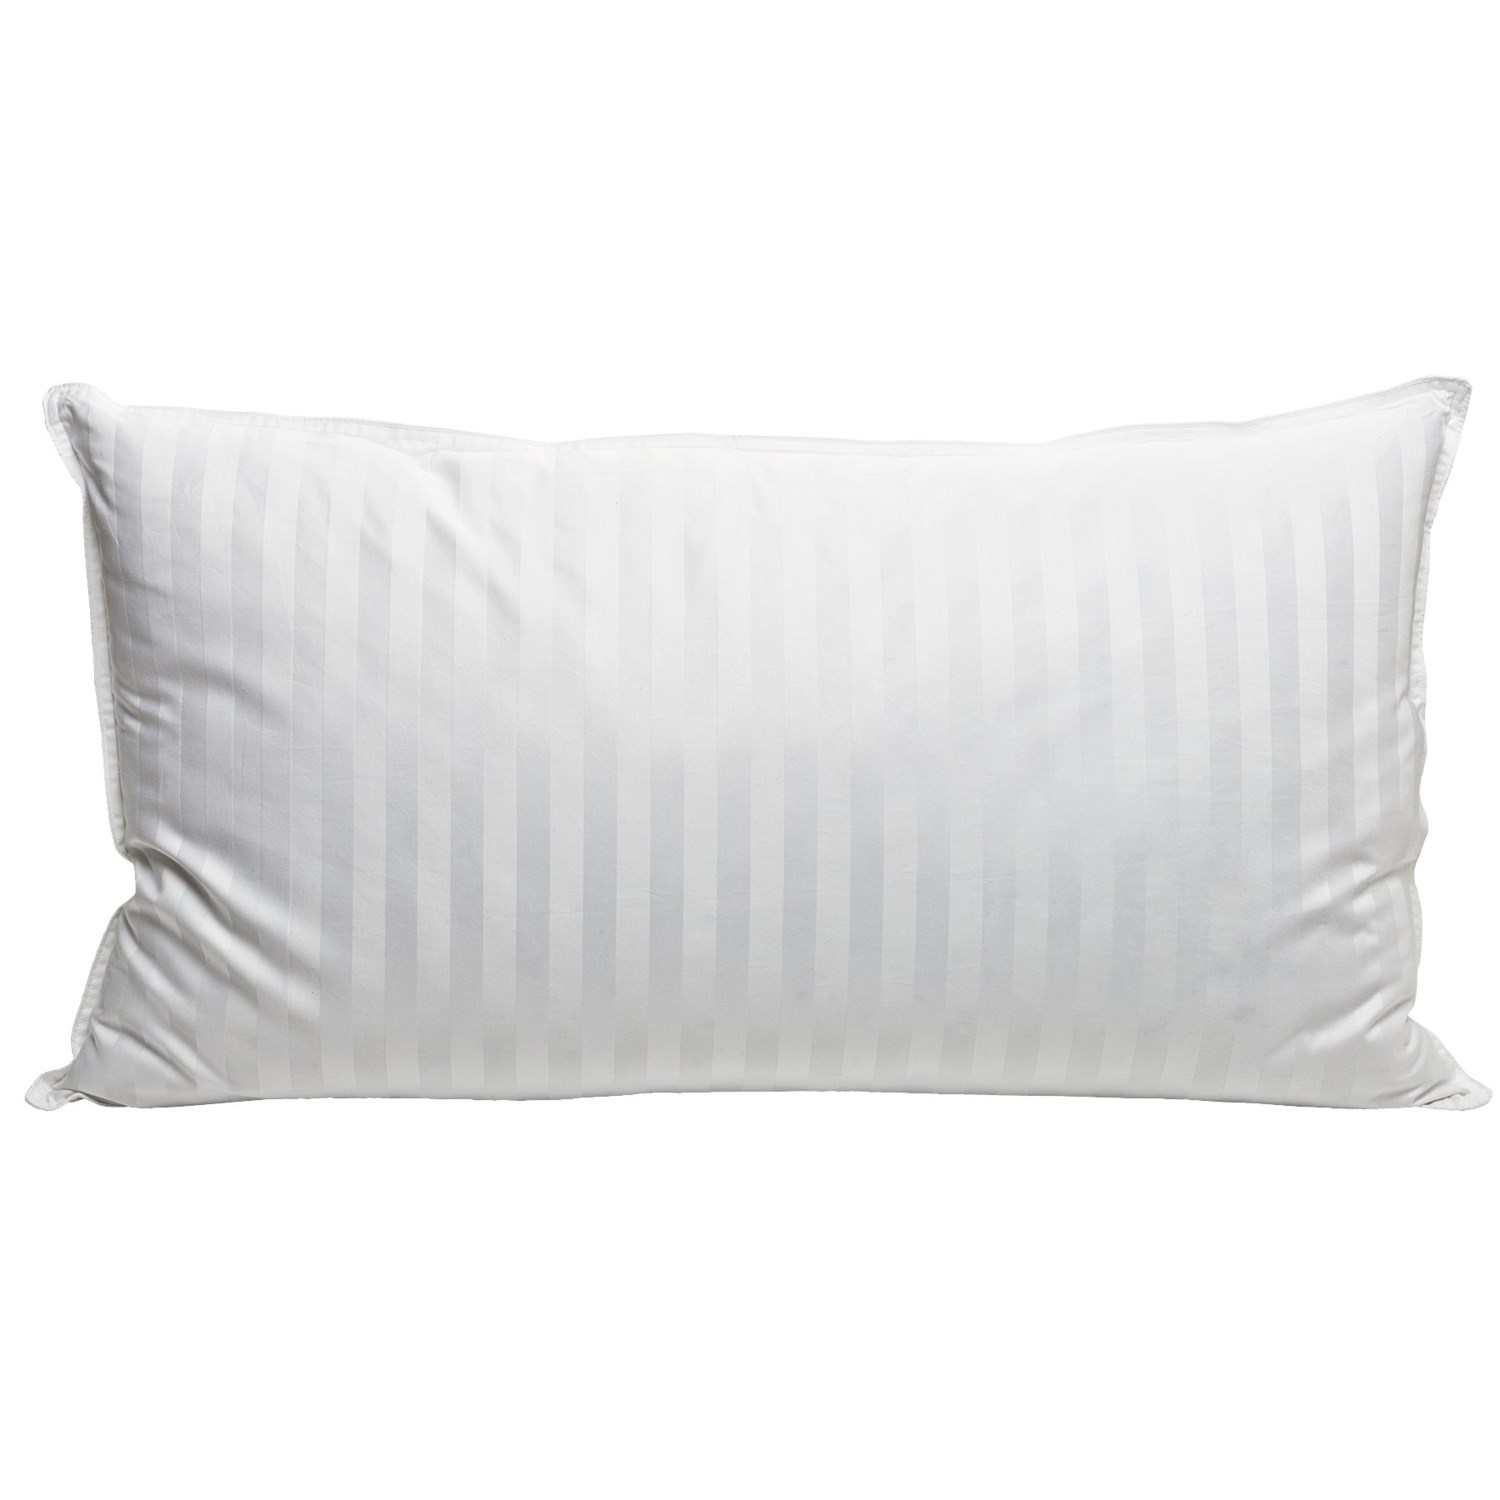 Blue Ridge Home Fashions Supreme White Down Pillow   350 TC, King 5462H 40